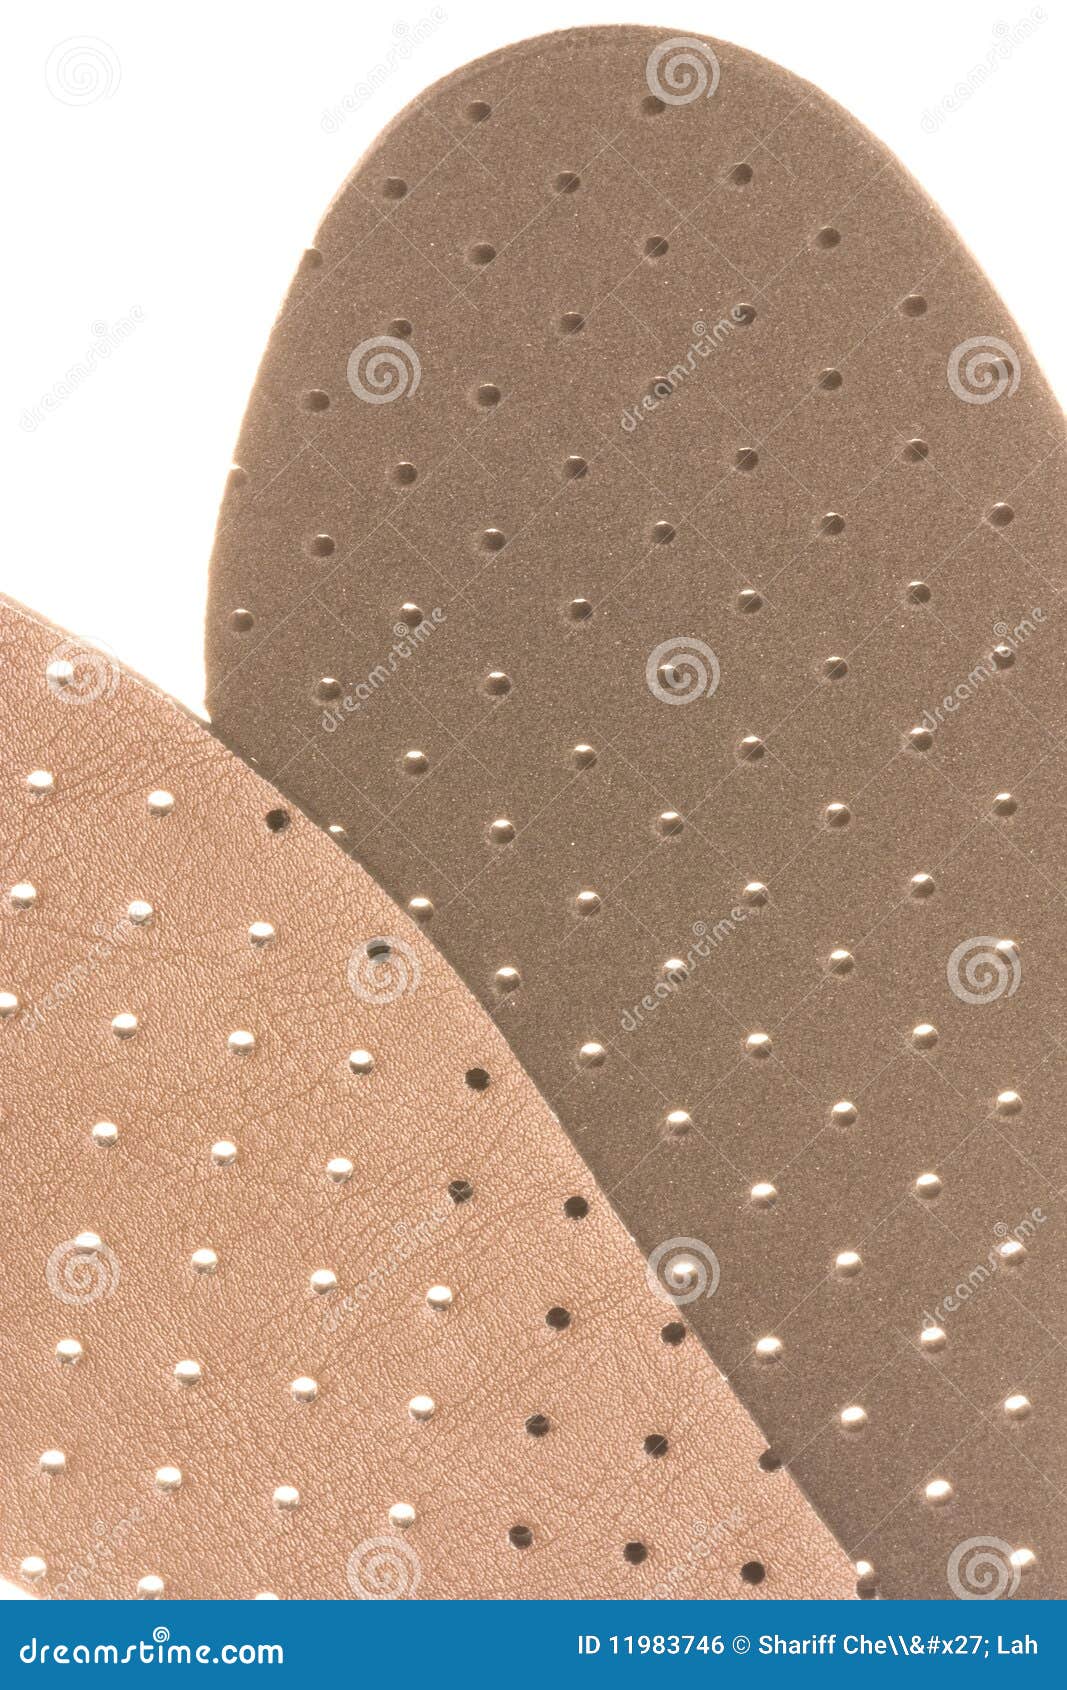 leather shoe insole padding